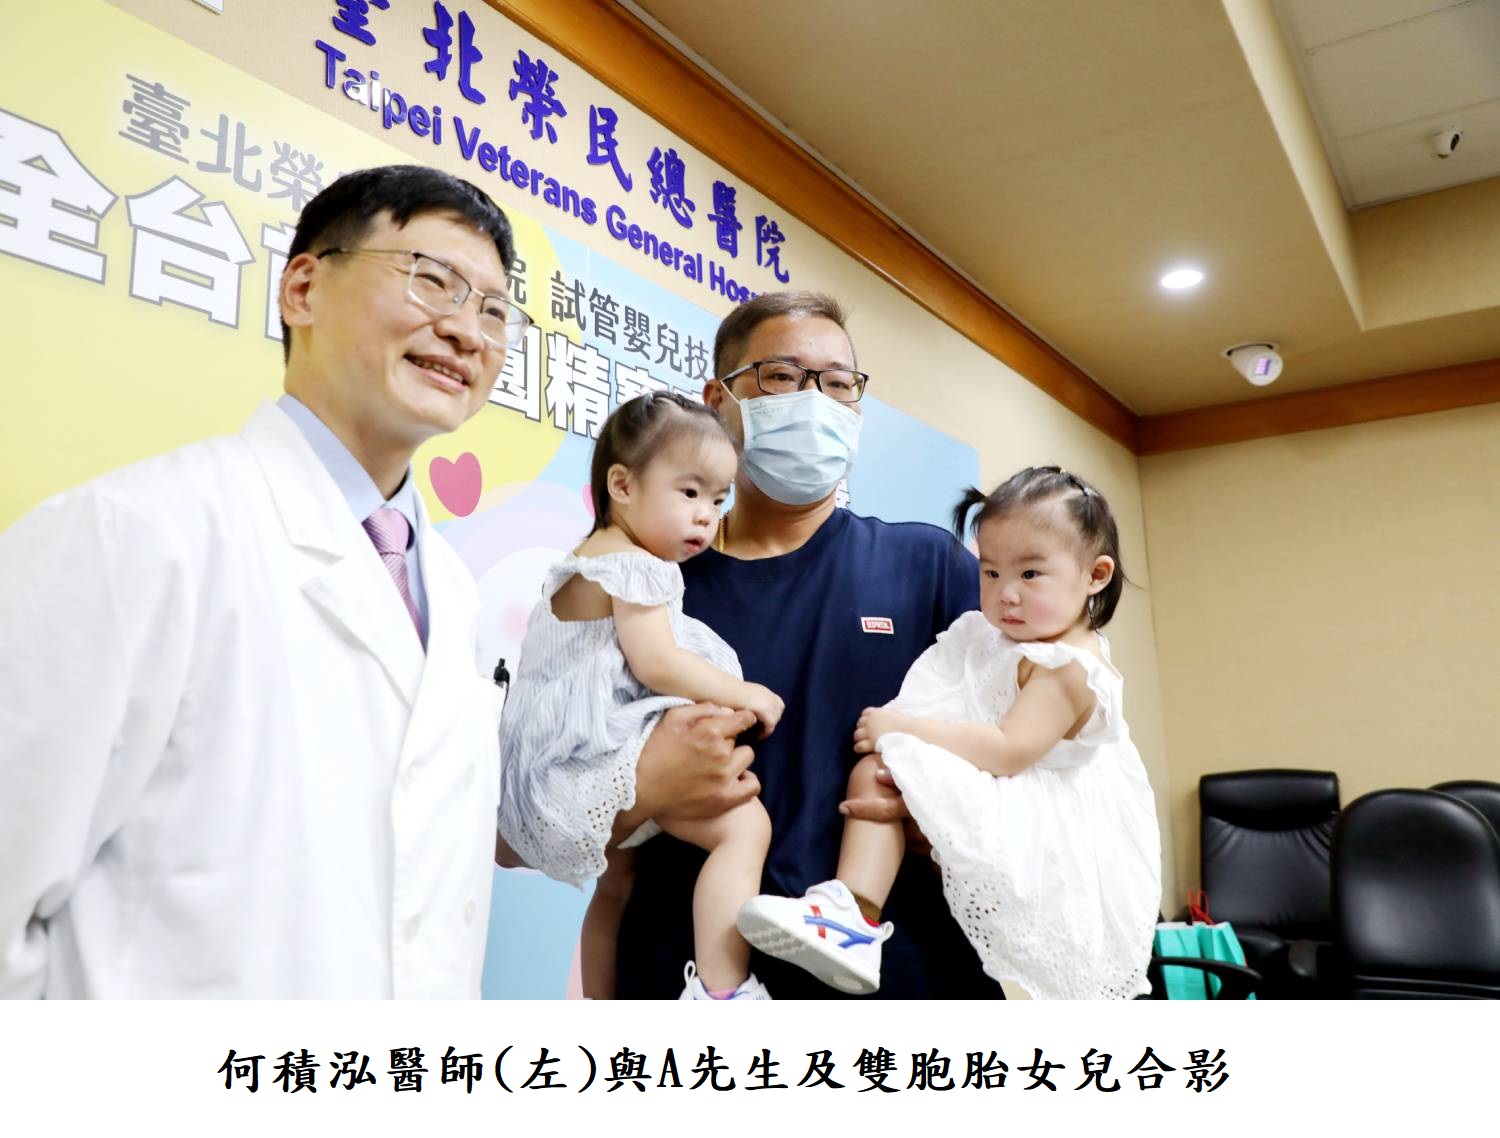 何積泓醫師(左)與A先生及雙胞胎女兒合影